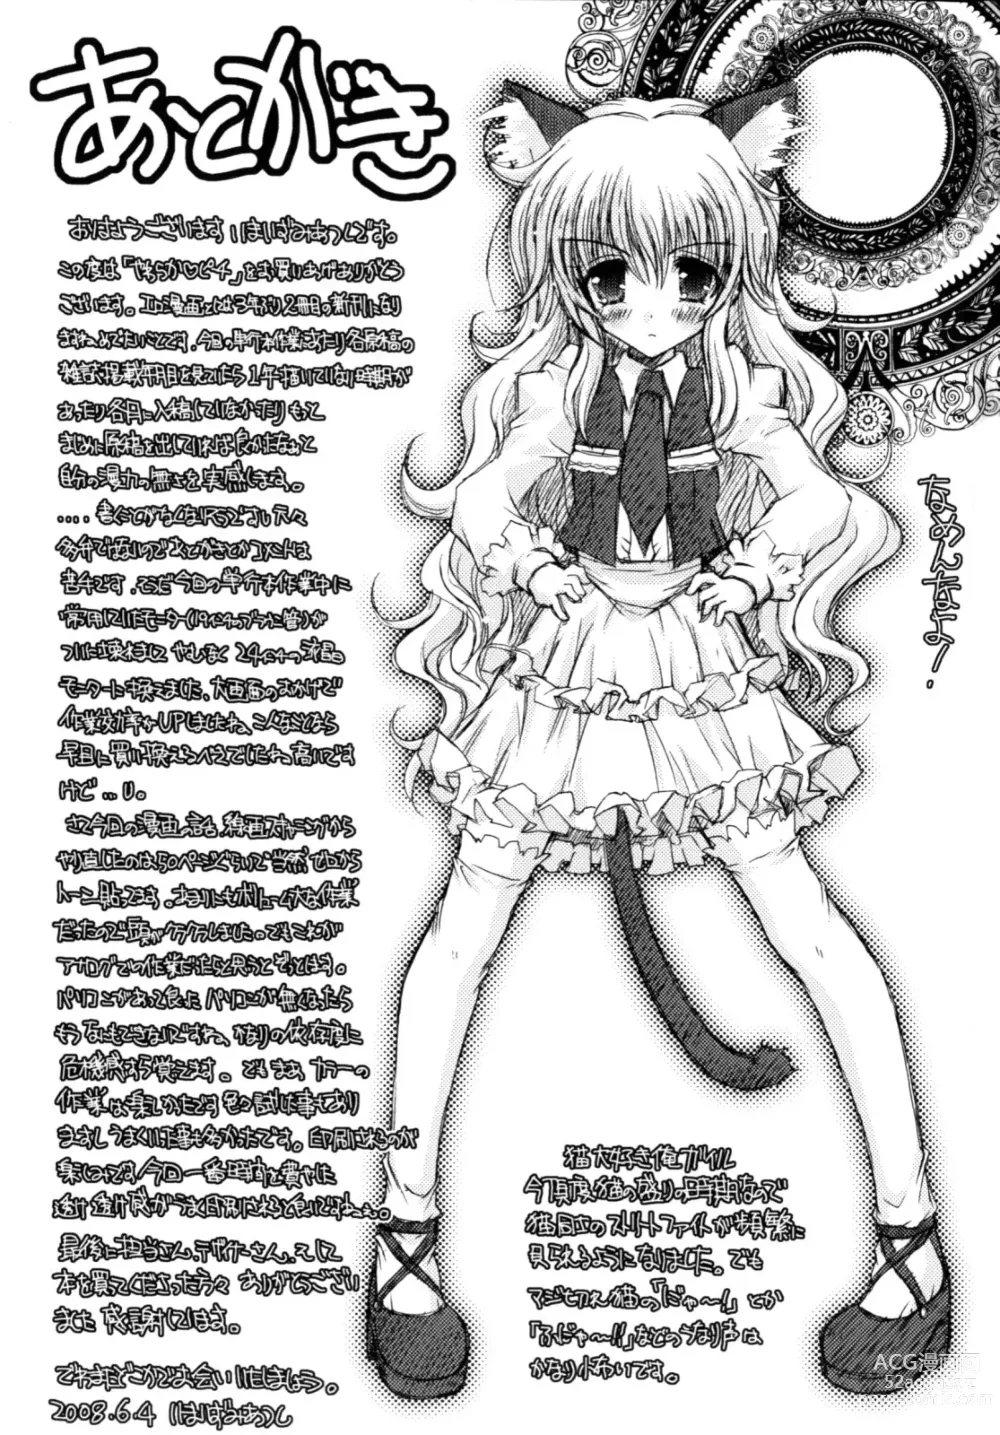 Page 190 of manga Yawaraka Peach